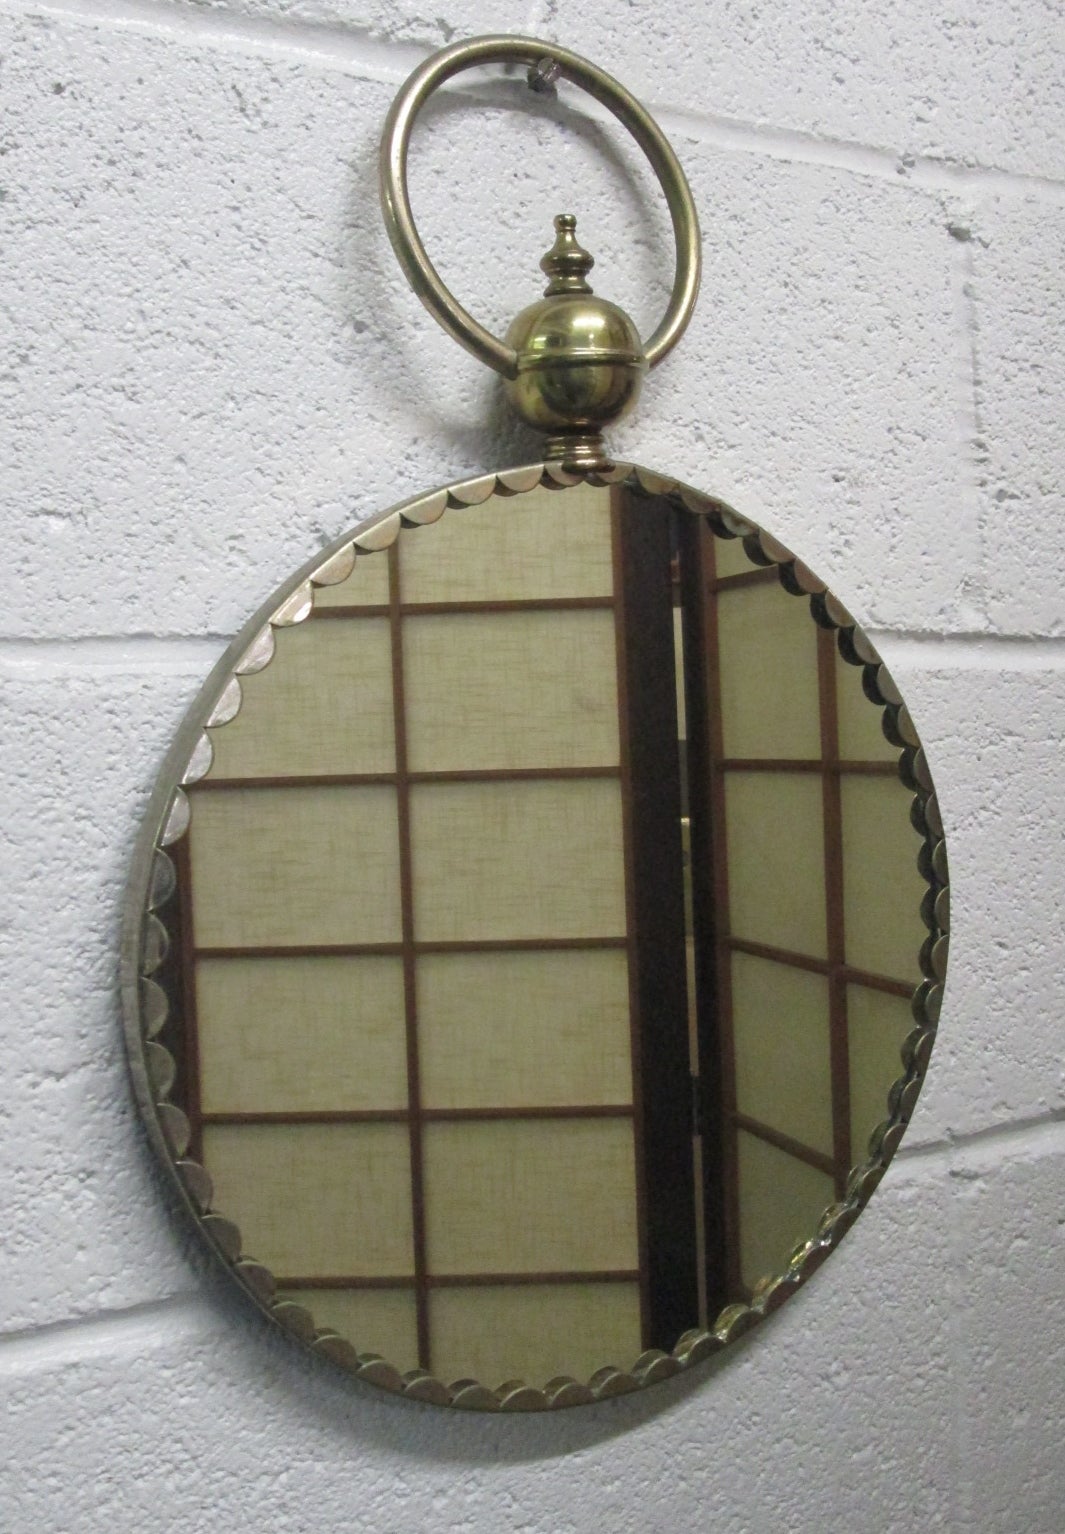 Italienischer dekorativer Messingspiegel. Der Spiegel hat oben einen Ring zum Aufhängen.